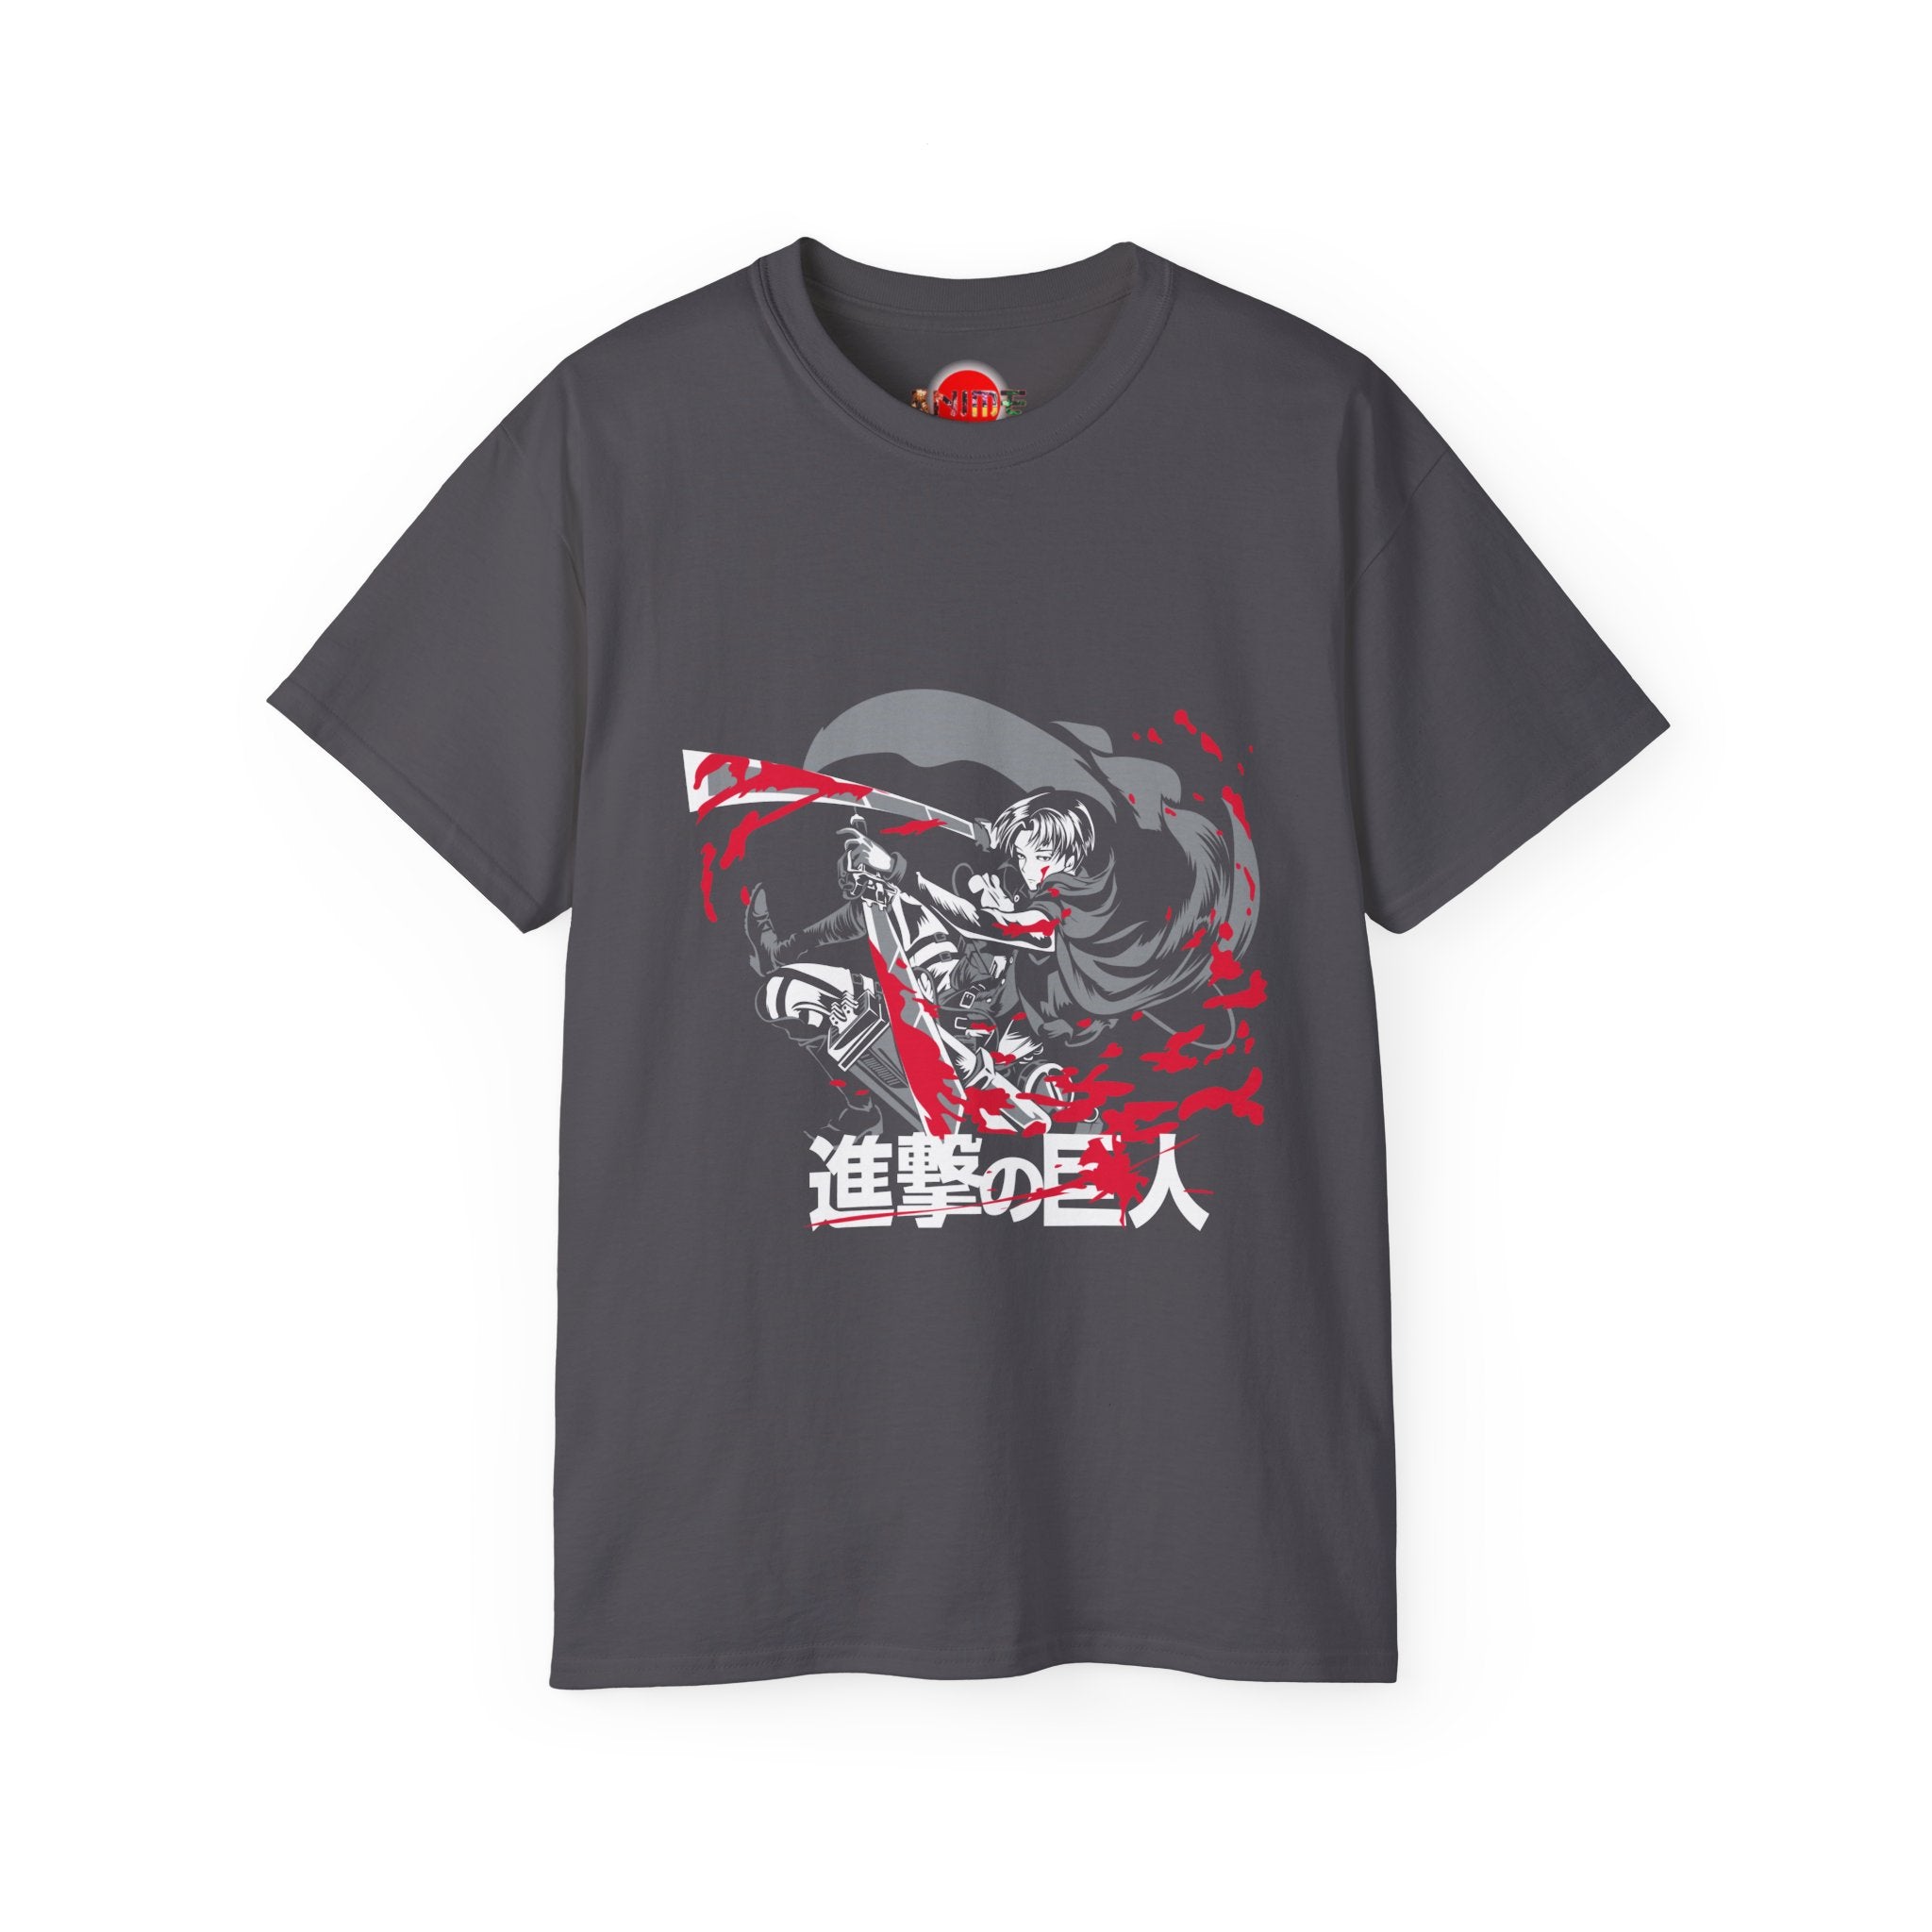 Attack on Titan Shirt | Unisex Ultra Cotton Tee | Japanese Anime World